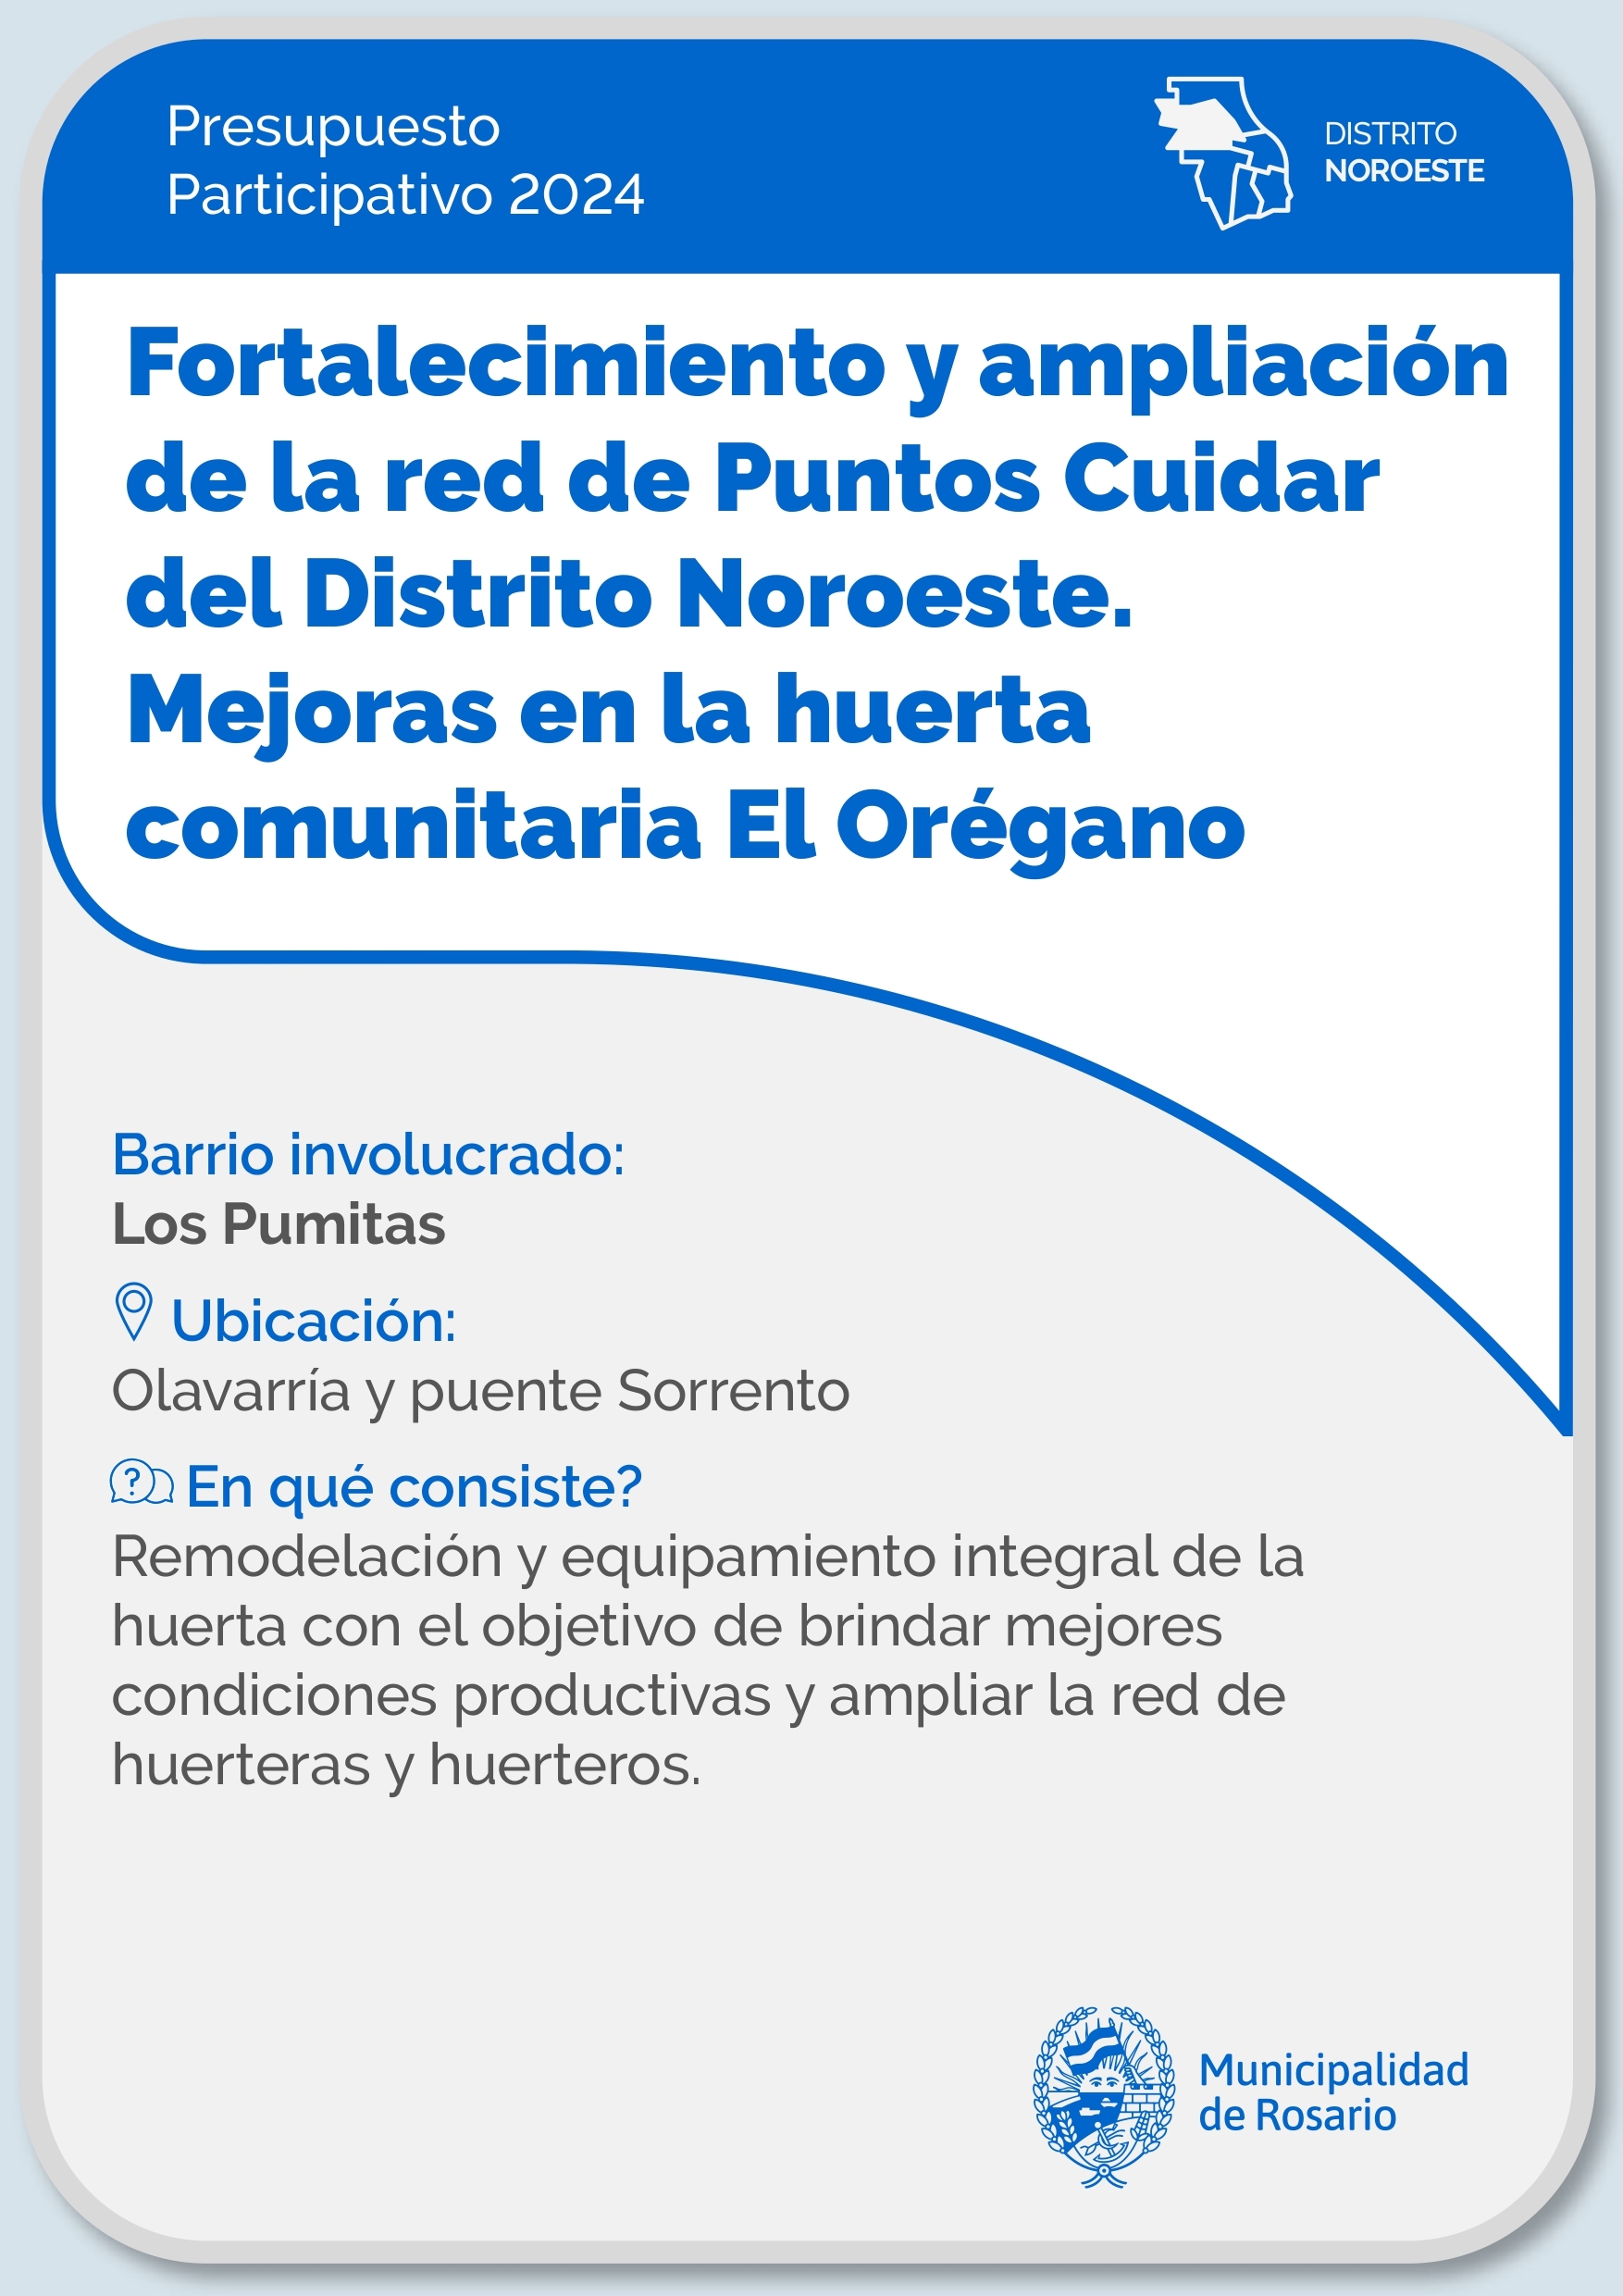 Fortalecimiento y ampliación de la red de Puntos Cuidar. Mejoras en la huerta comunitaria El Orégano - Distrito Noroeste